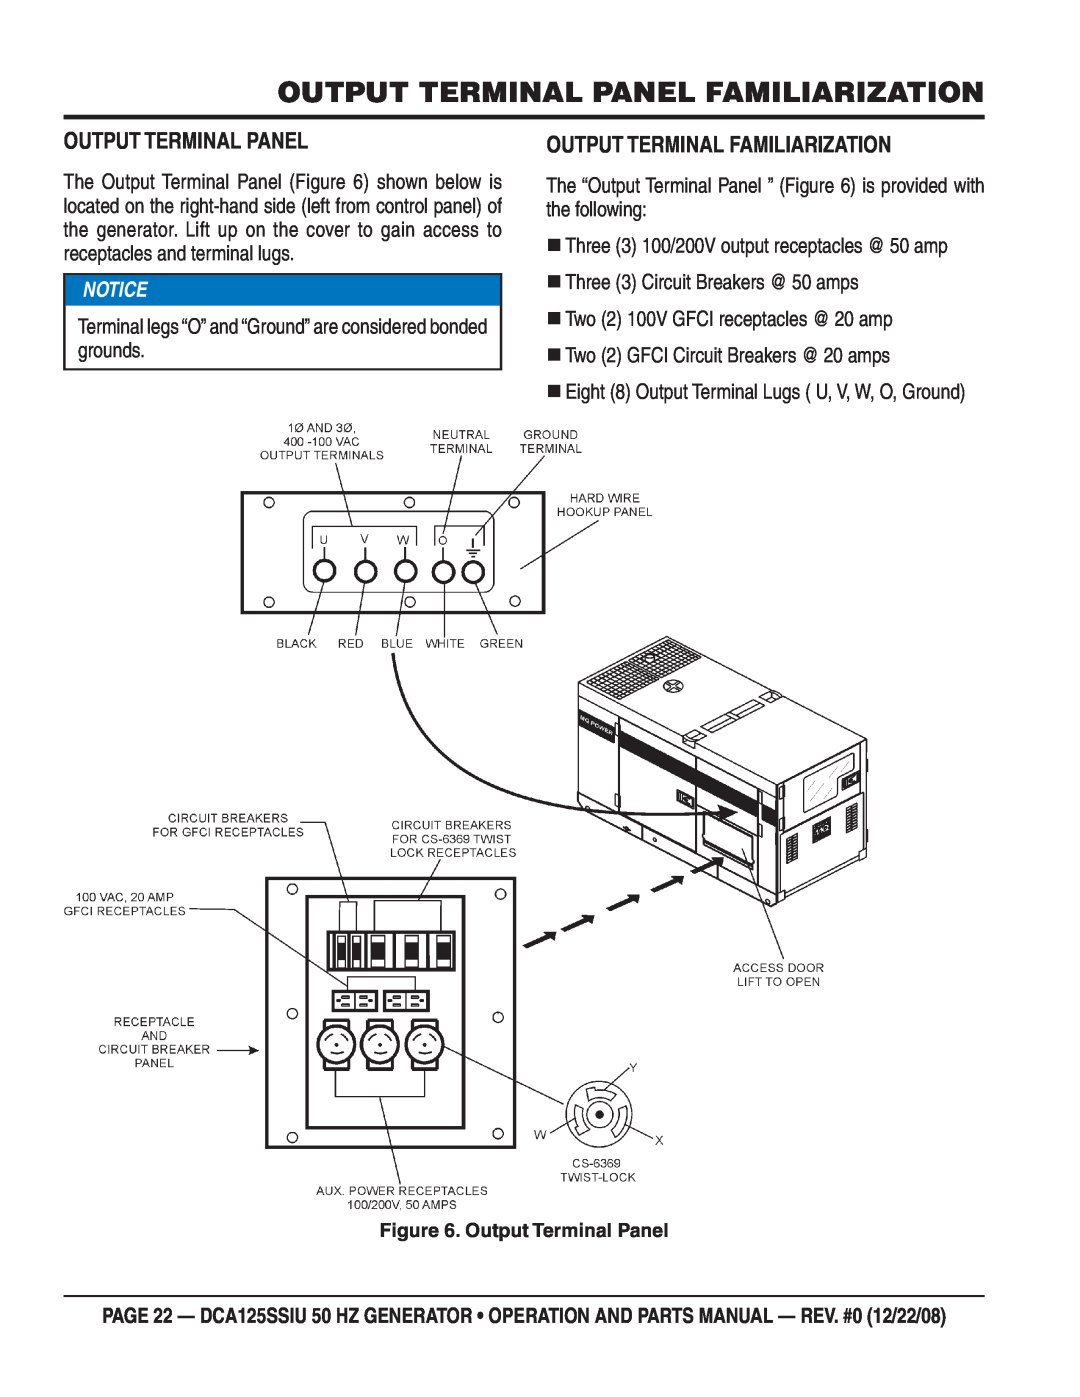 Multiquip DCA125SSIU manual Output Terminal Panel Familiarization, Output Terminal Familiarization, Notice 